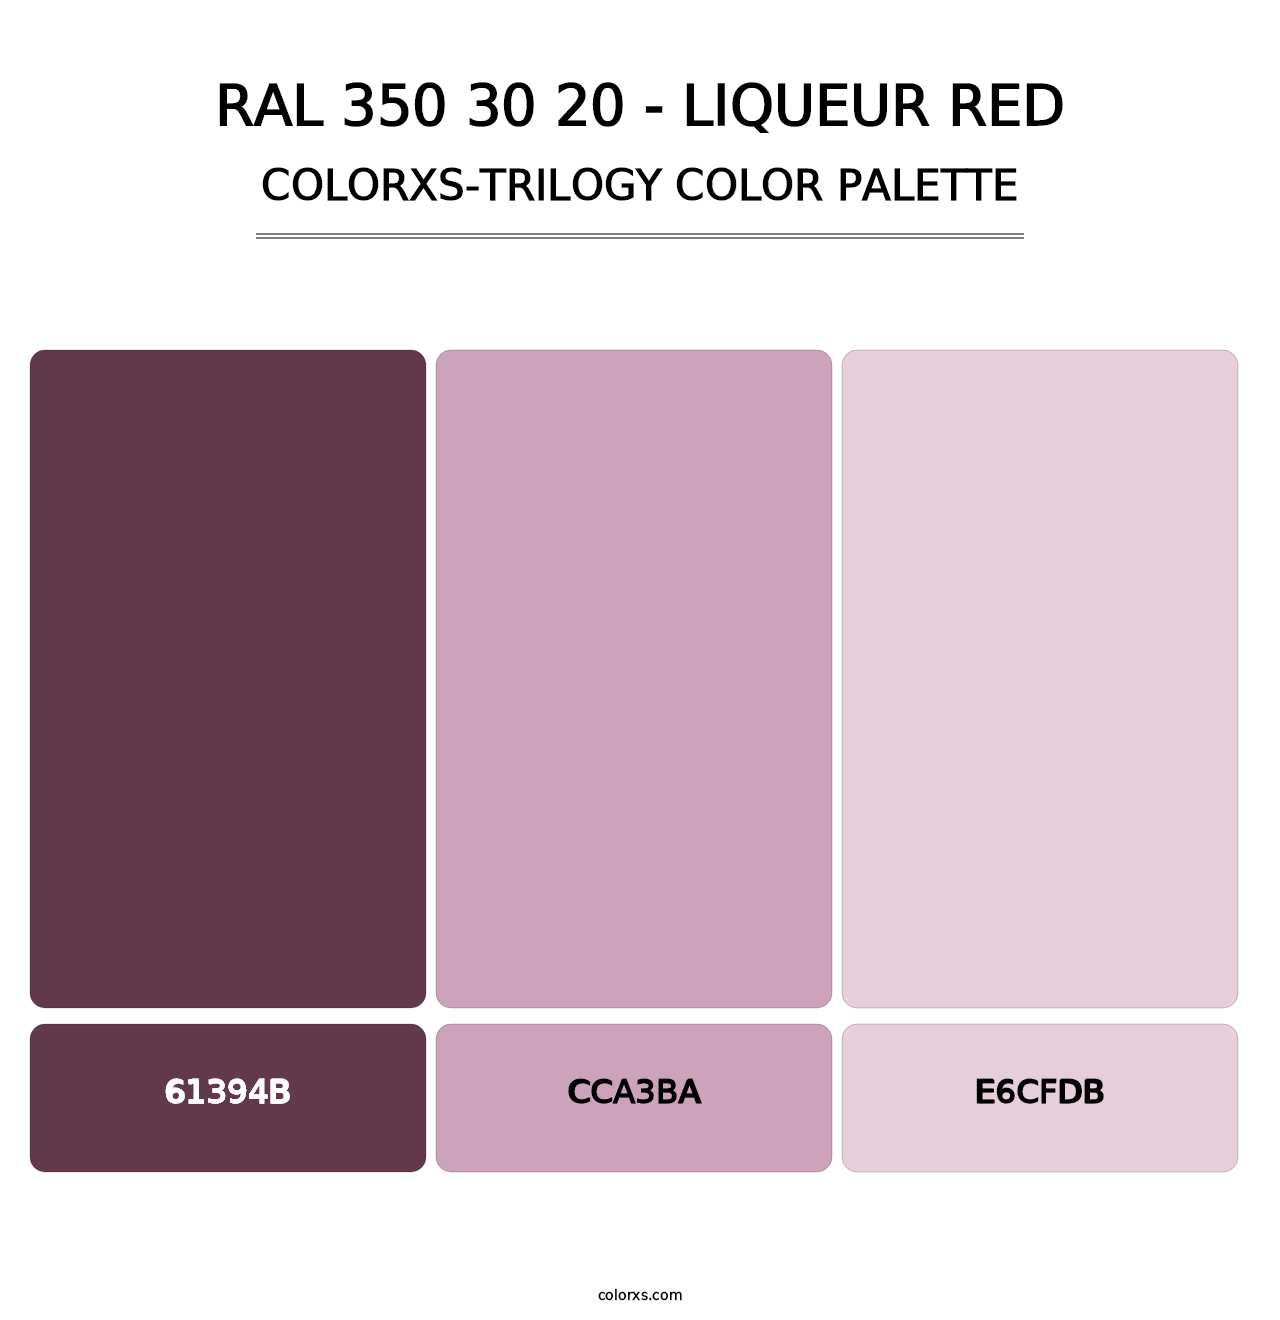 RAL 350 30 20 - Liqueur Red - Colorxs Trilogy Palette